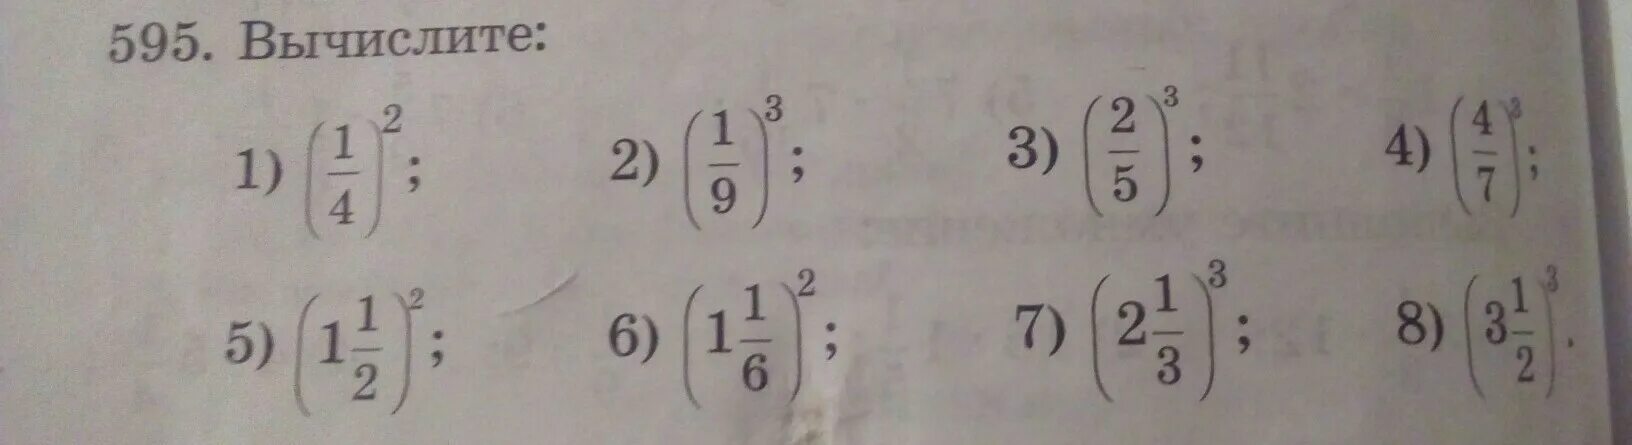 Тип 6 i вычислите ответ. Вычислить 1-1/2. Вычислите (1 1 3). Вычислите (1-2). Вычислите 1,1^4.